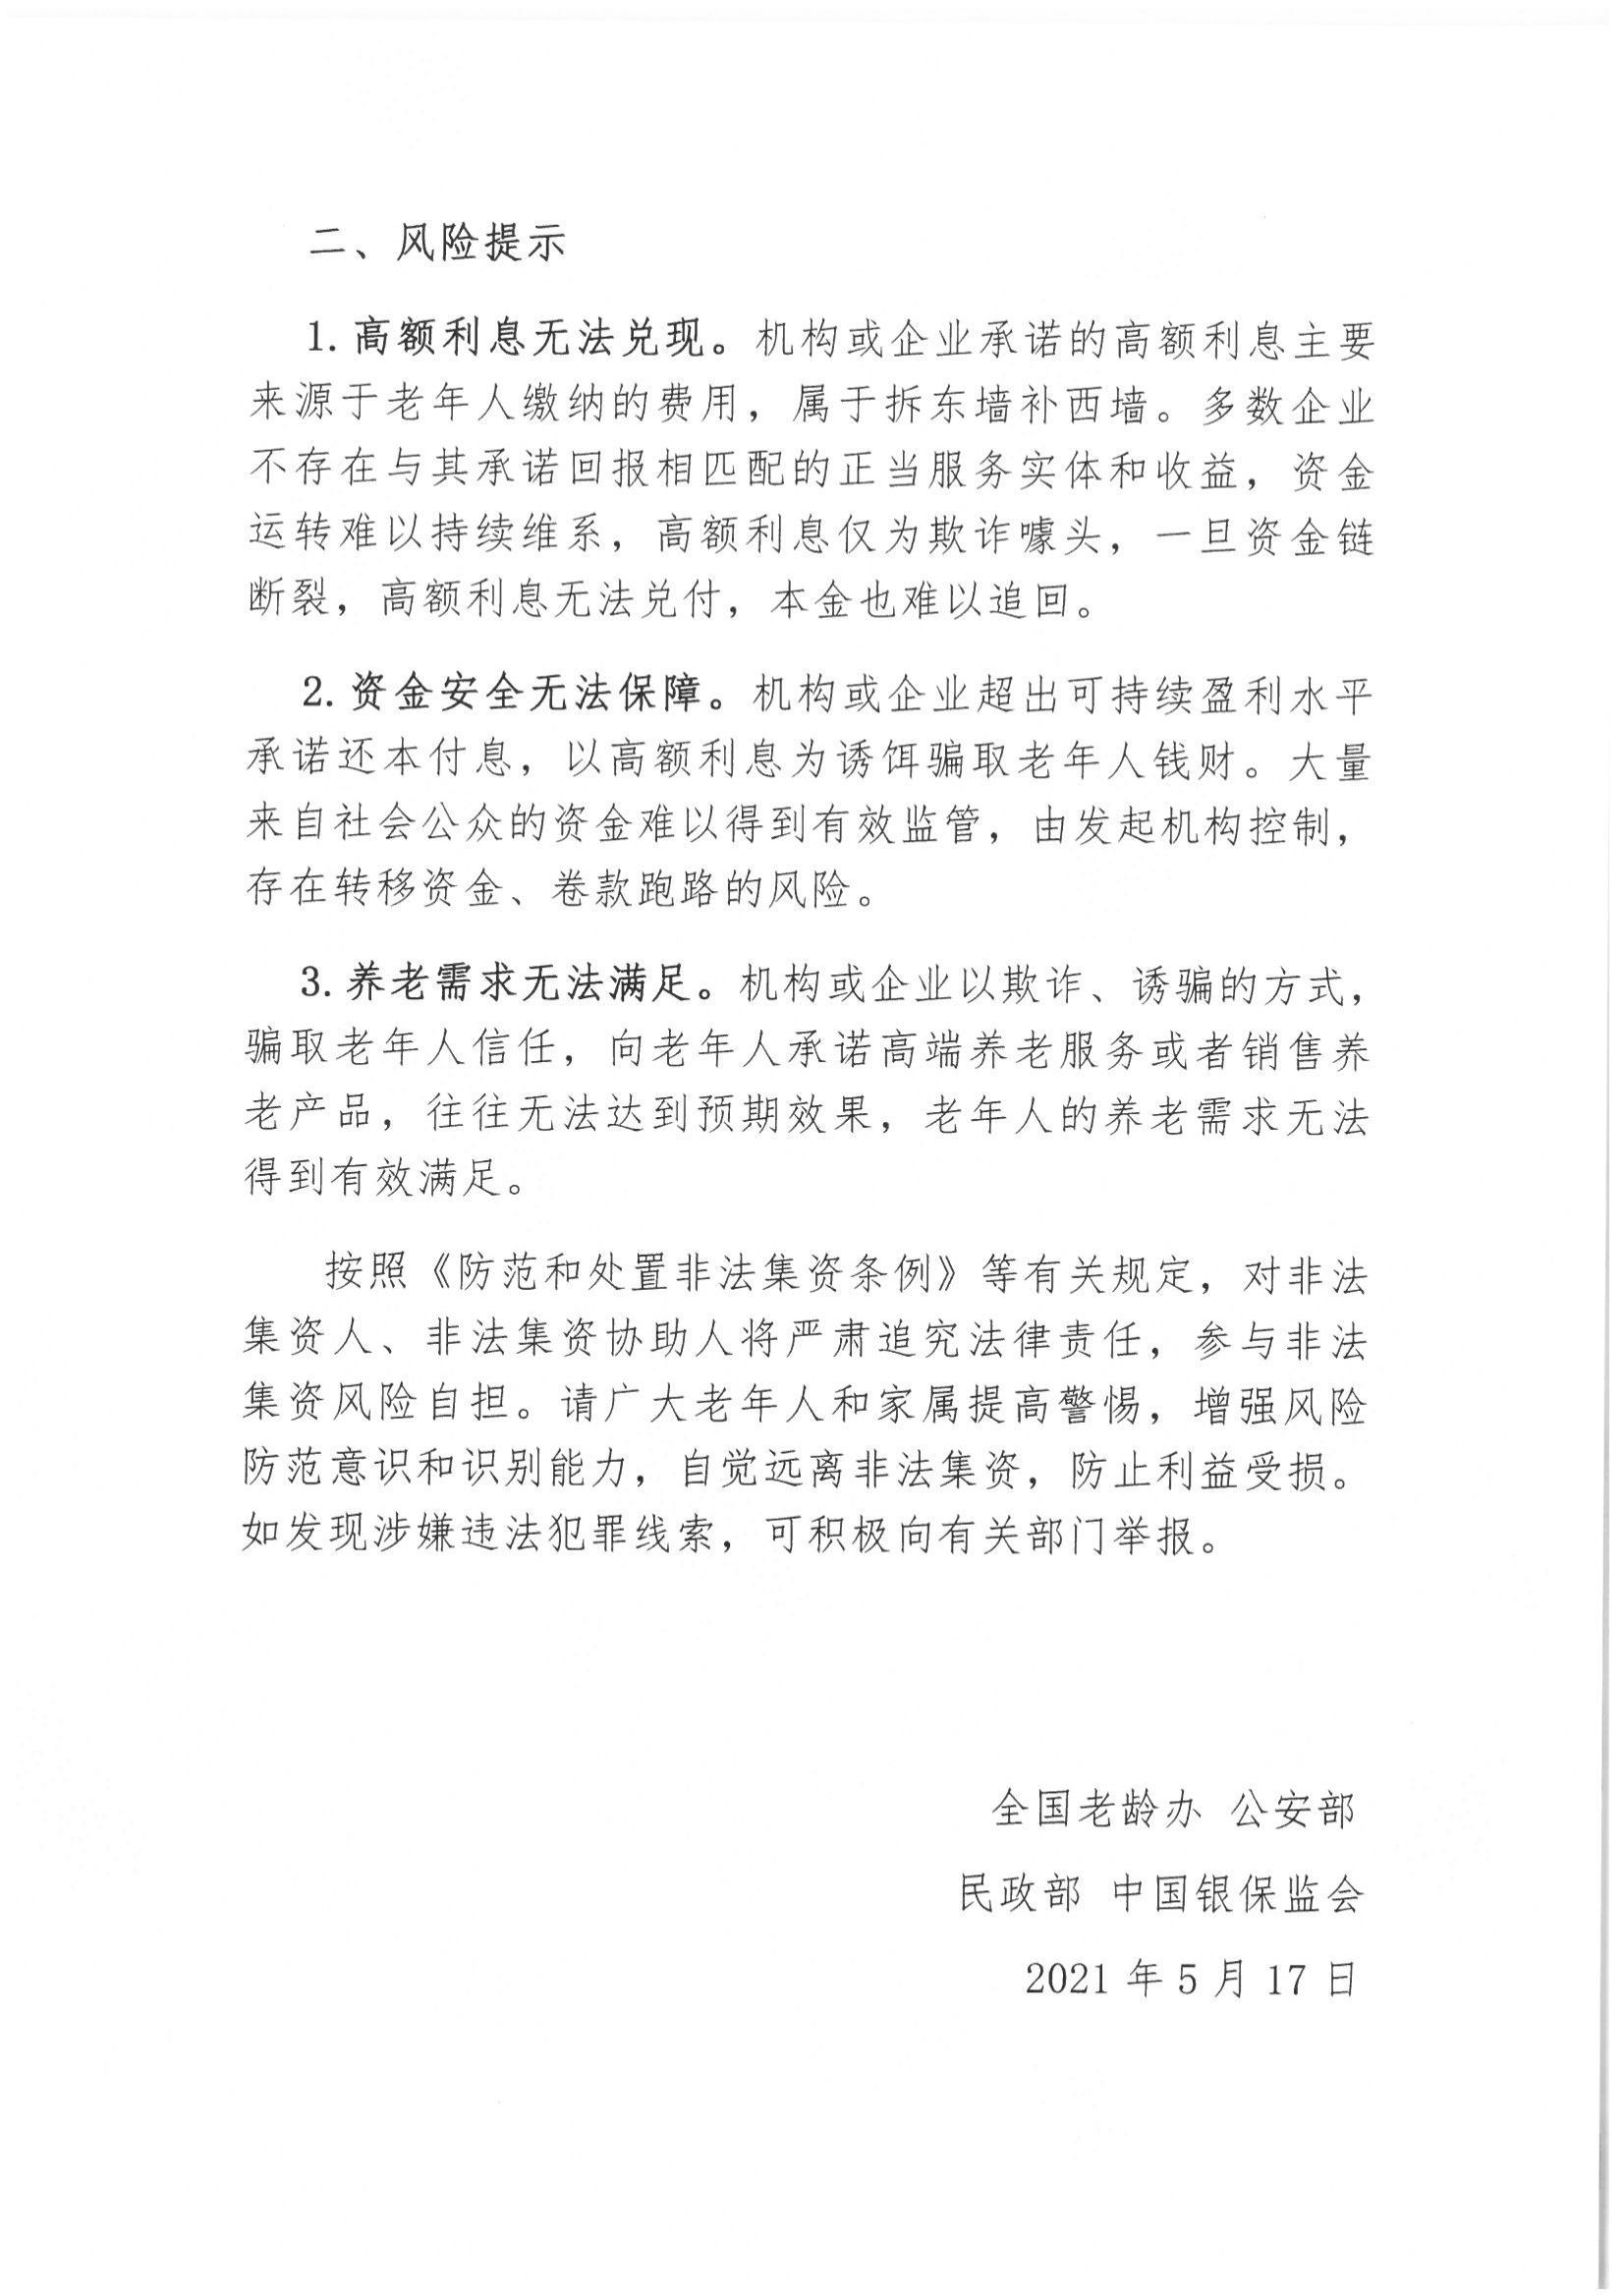 6、北京市公证协会风险提示【2021年第1号】_03